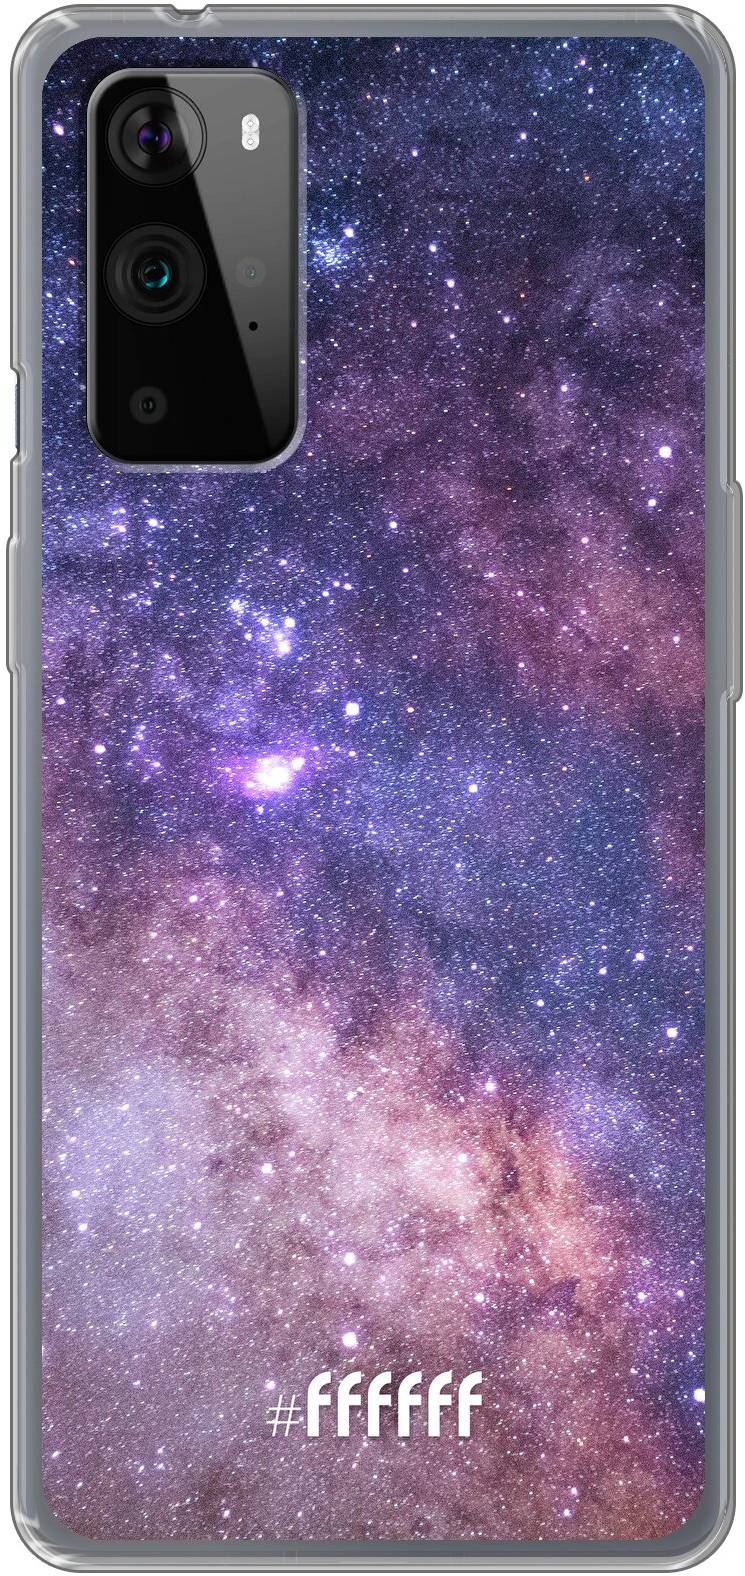 Galaxy Stars 9 Pro